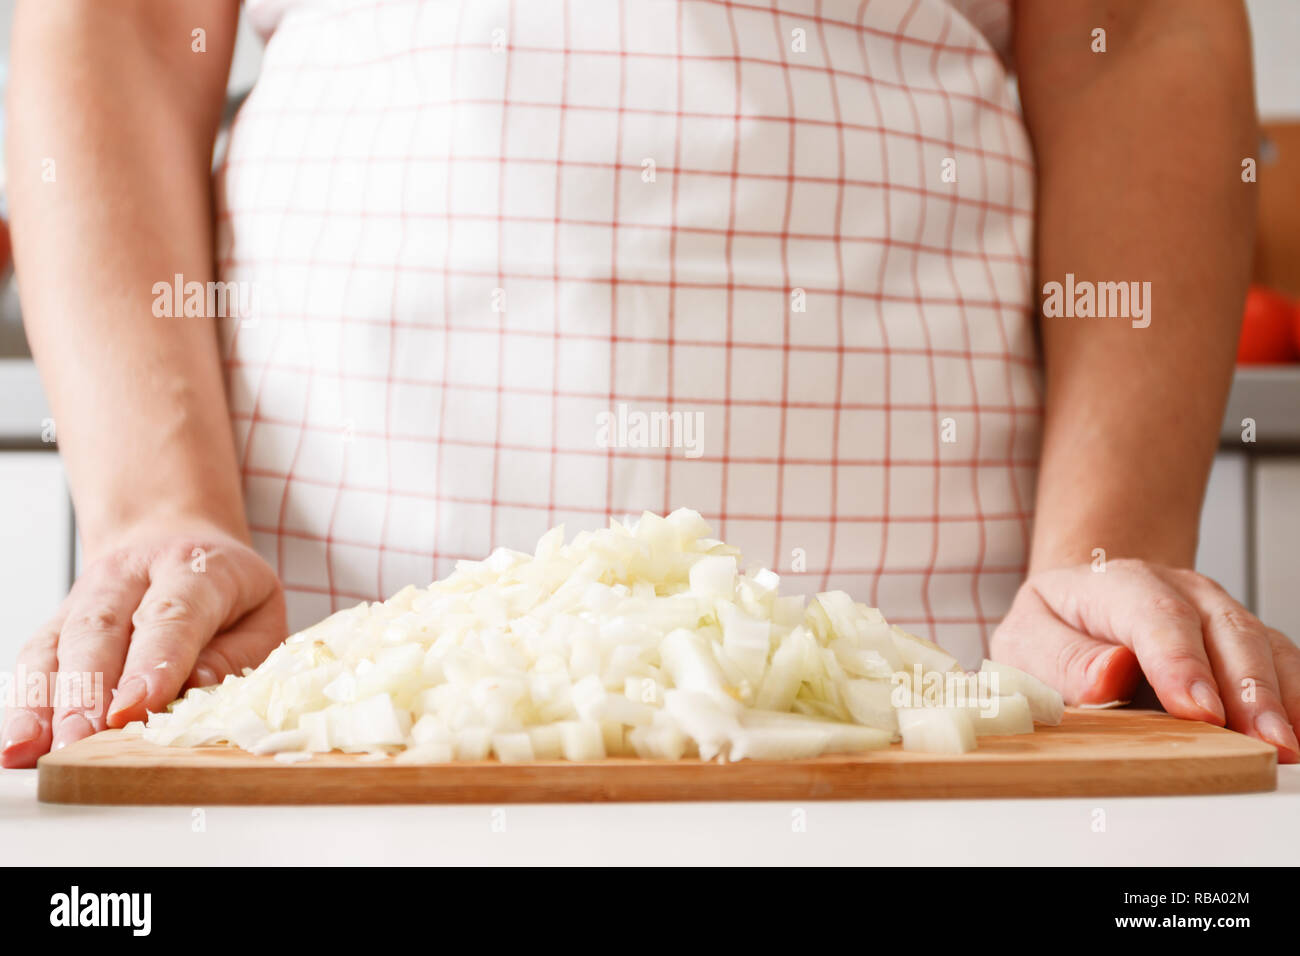 Une femme de cuisiniers dans la cuisine, sur une planche en bois se trouve une pile d'oignon haché. Les aliments frais et sain. Close-up Banque D'Images